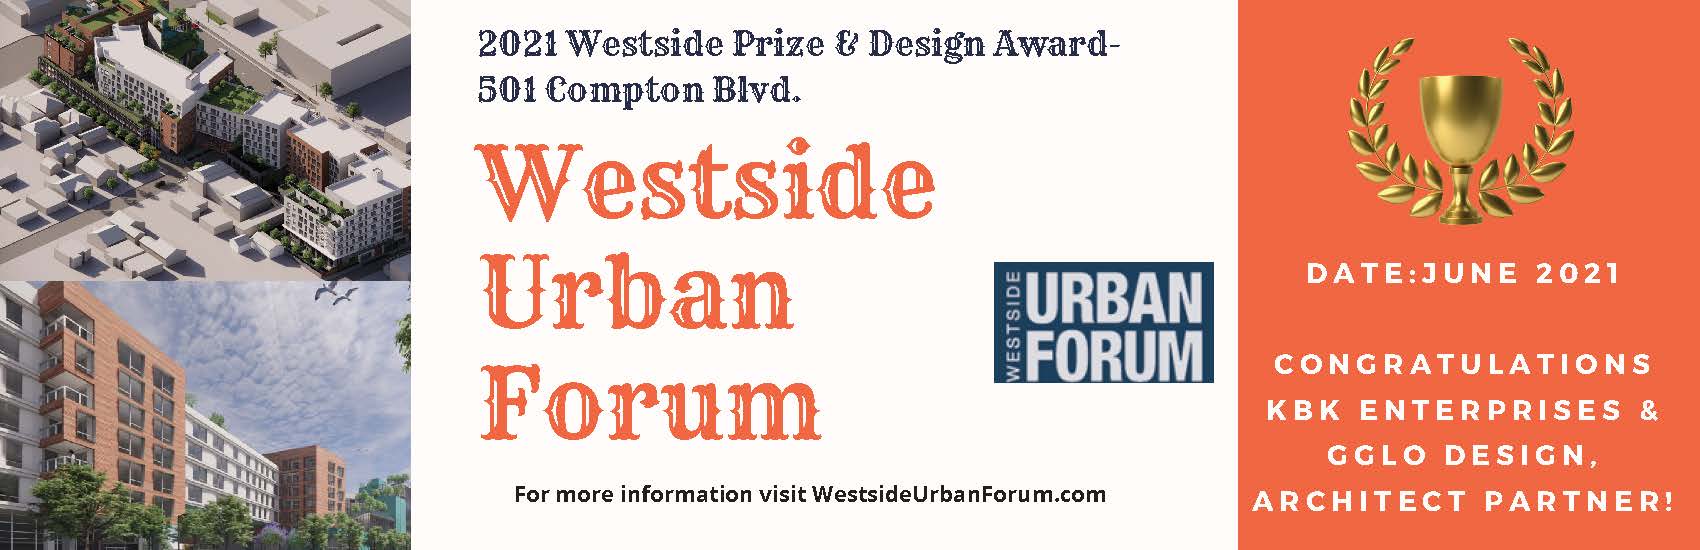 1548-westside-urban-forum-2.jpg